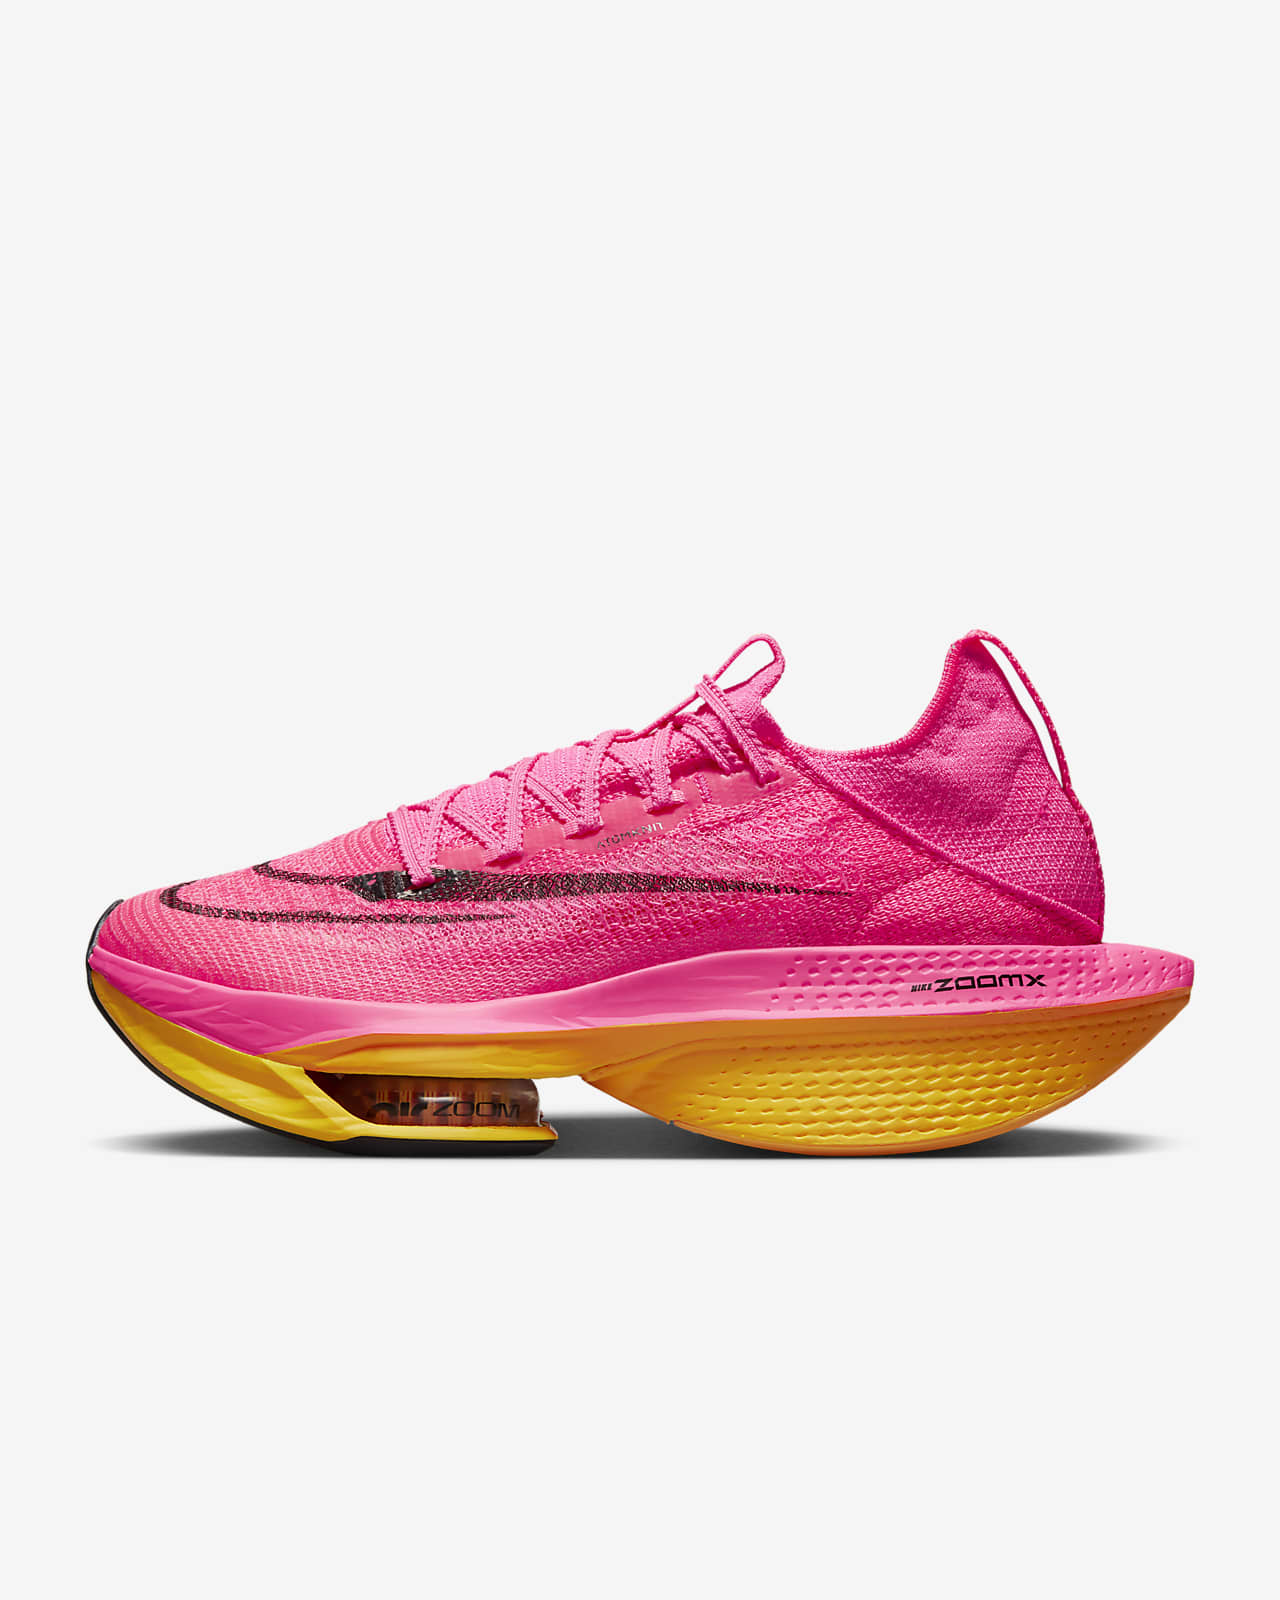 Γυναικεία παπούτσια αγώνων δρόμου Nike Alphafly 2